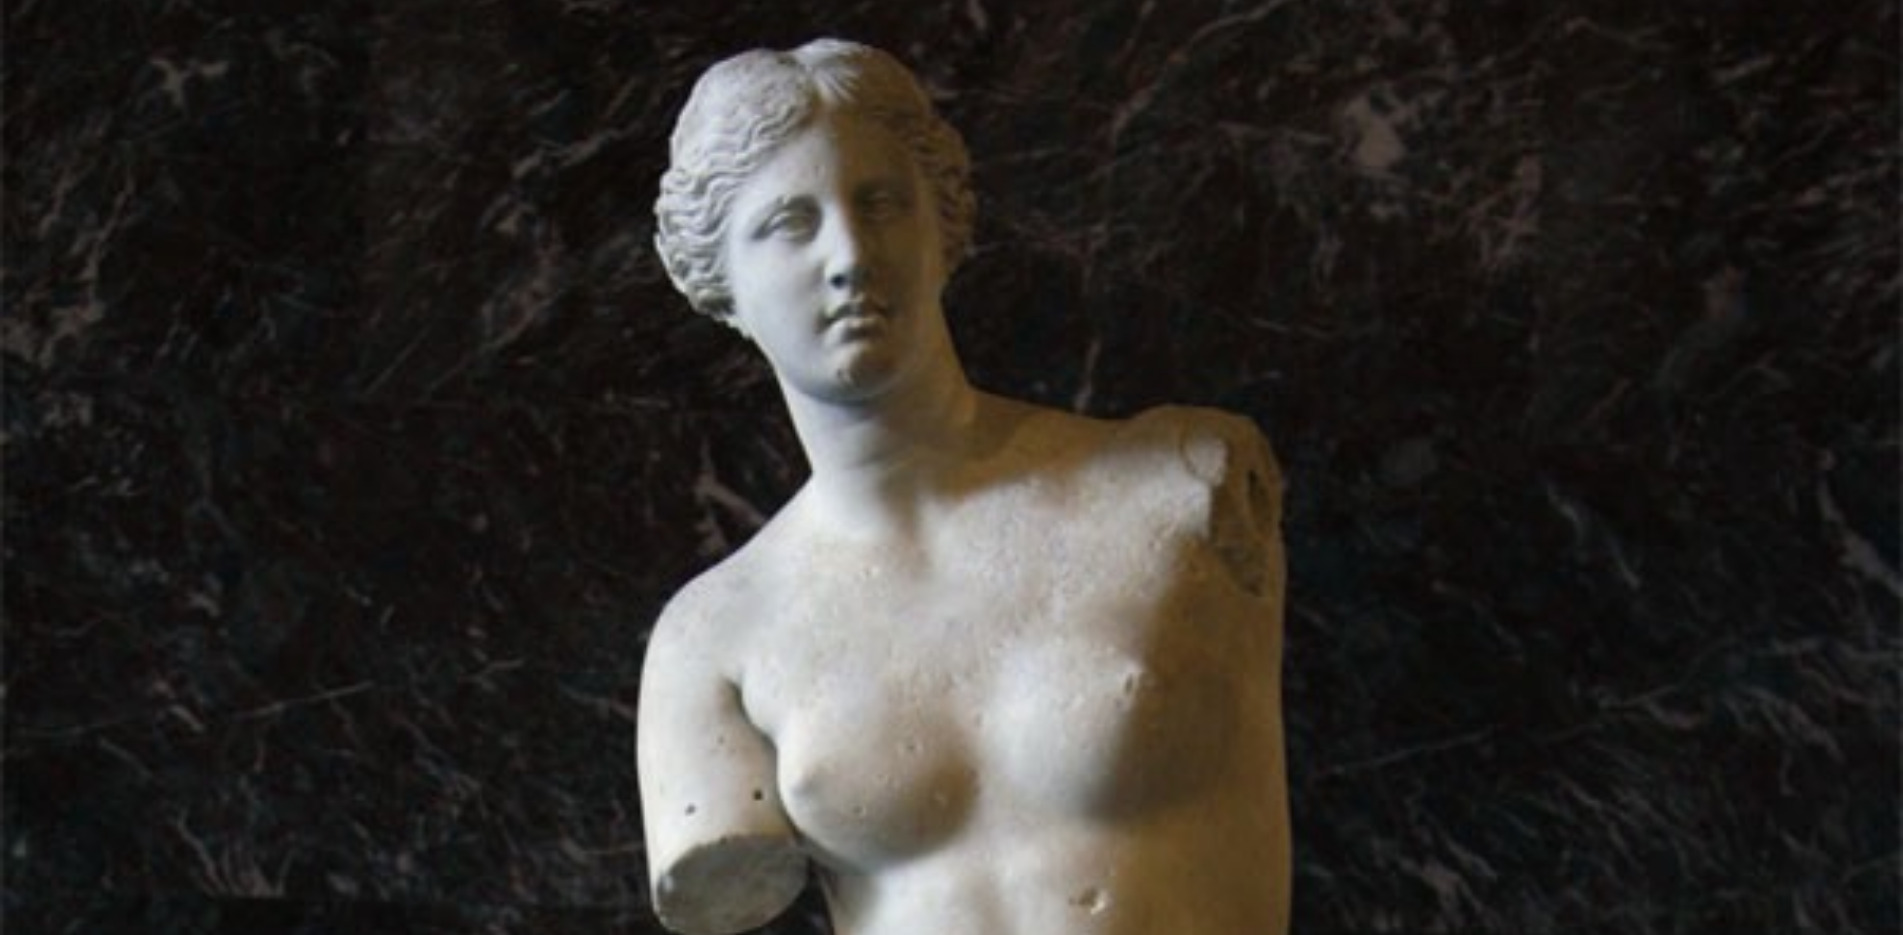  - Things You Should Know About Aphrodite – ‘Venus de Milo’